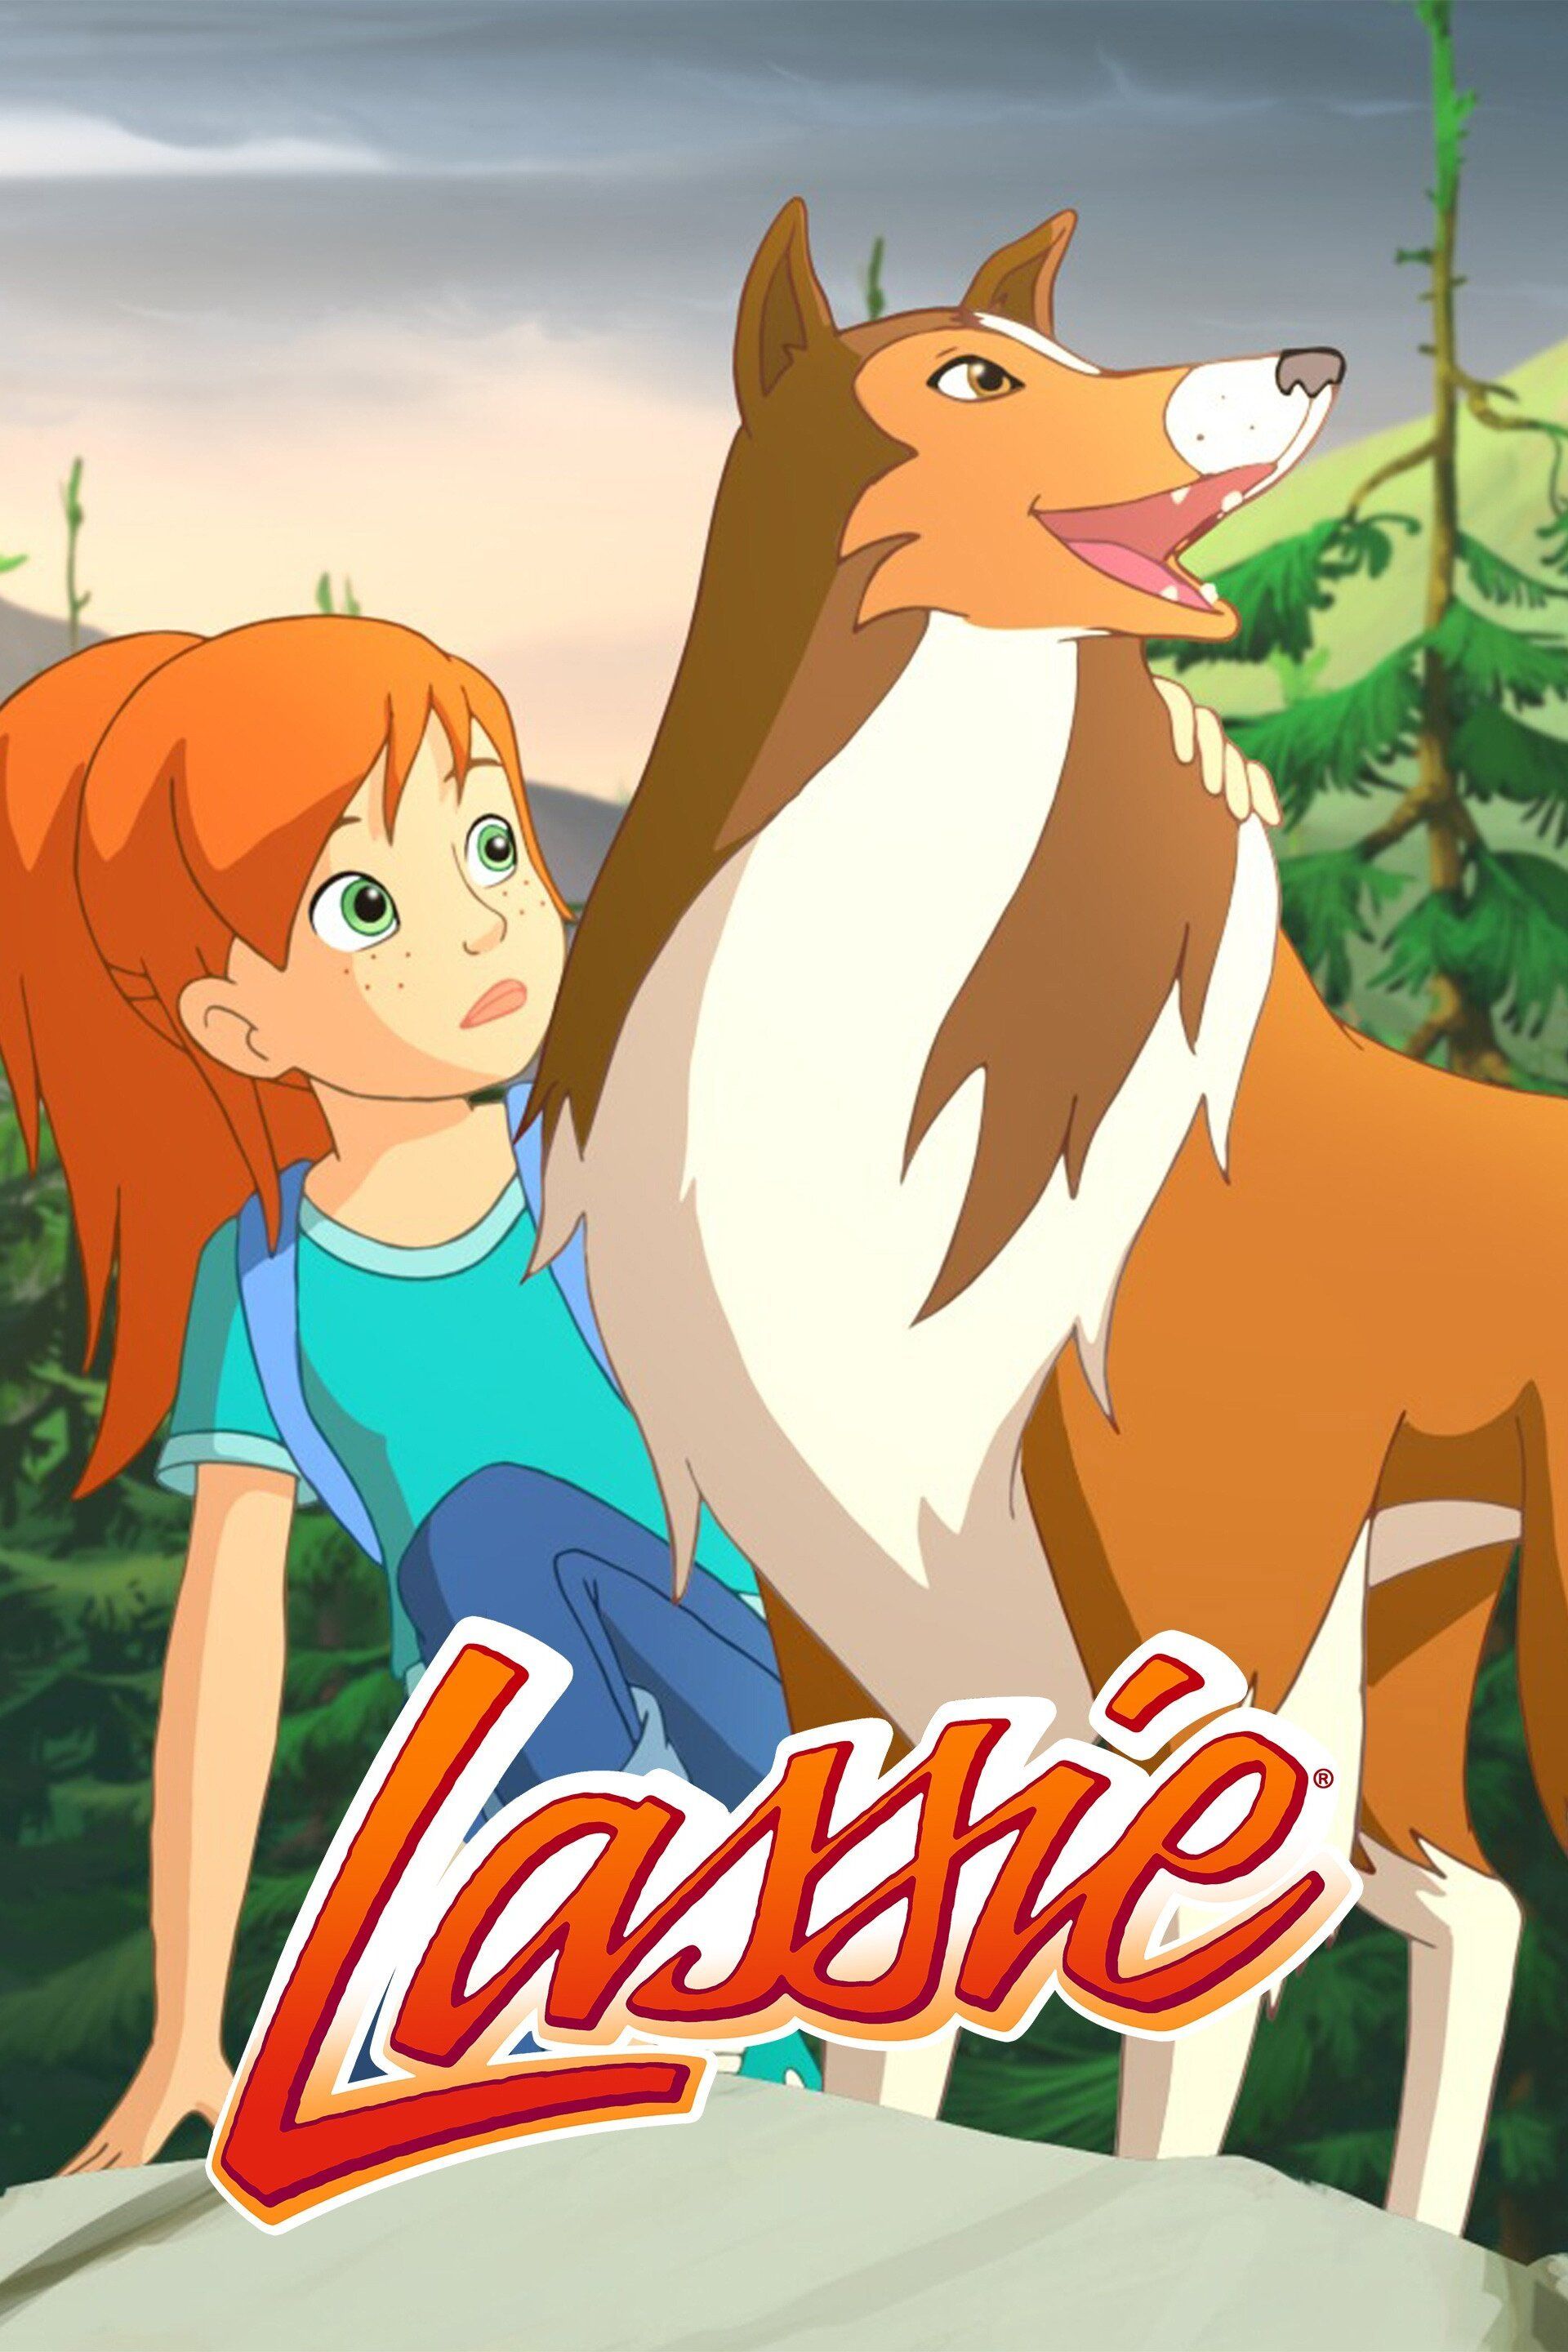 Lassie｜CATCHPLAY+ Watch Full Movie & Episodes Online